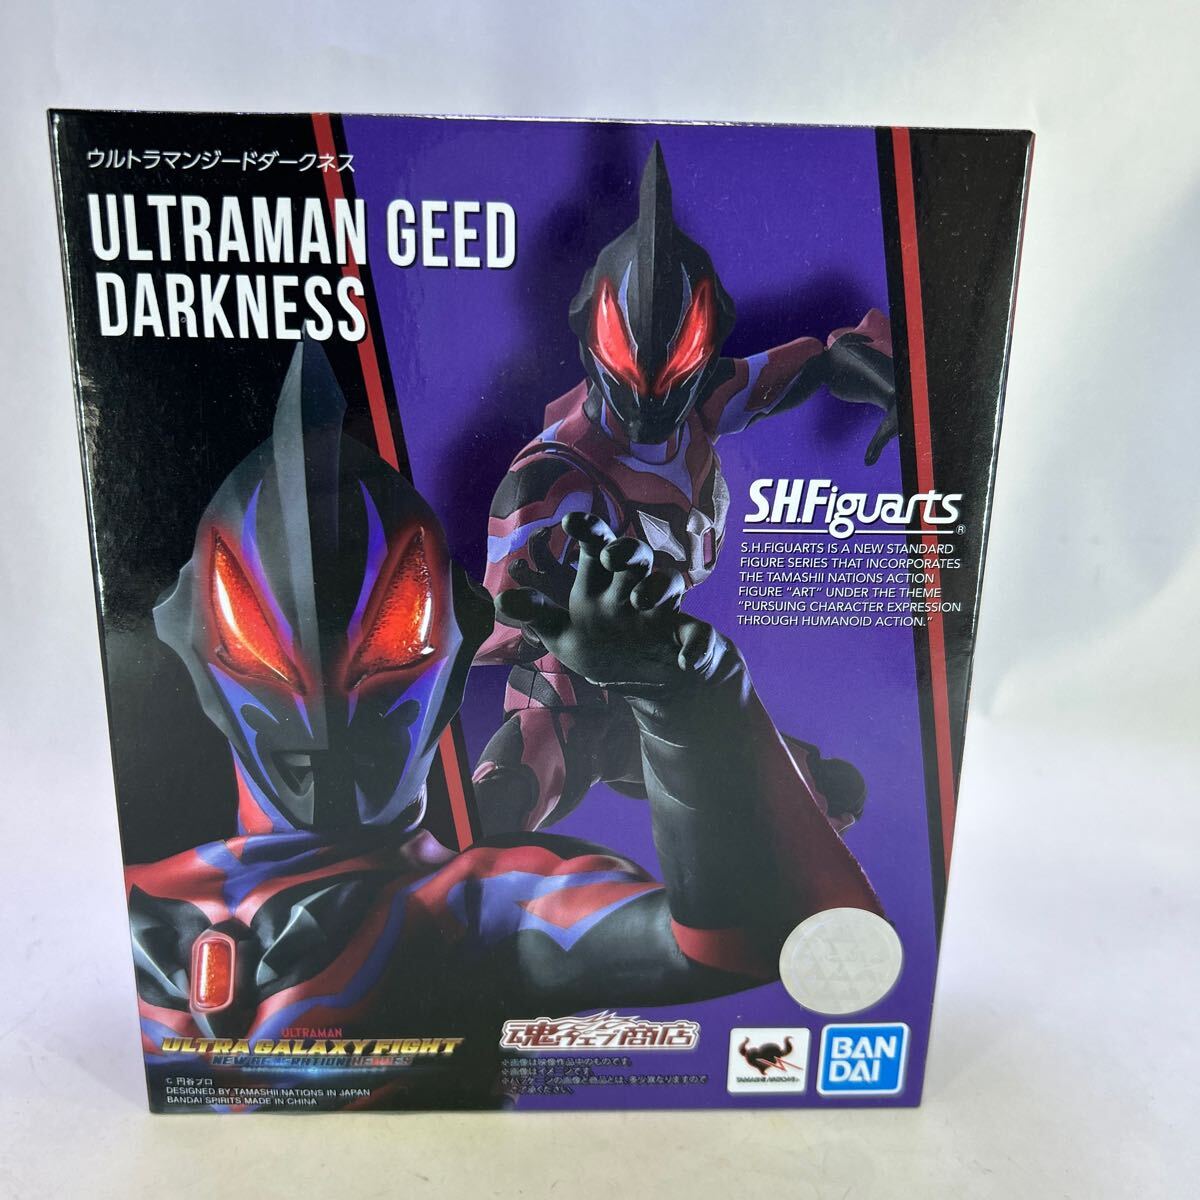  Bandai душа web магазин ограничение S.H.Figuarts Ultraman ji-do темный nes нераспечатанный перевозка коробка нет 